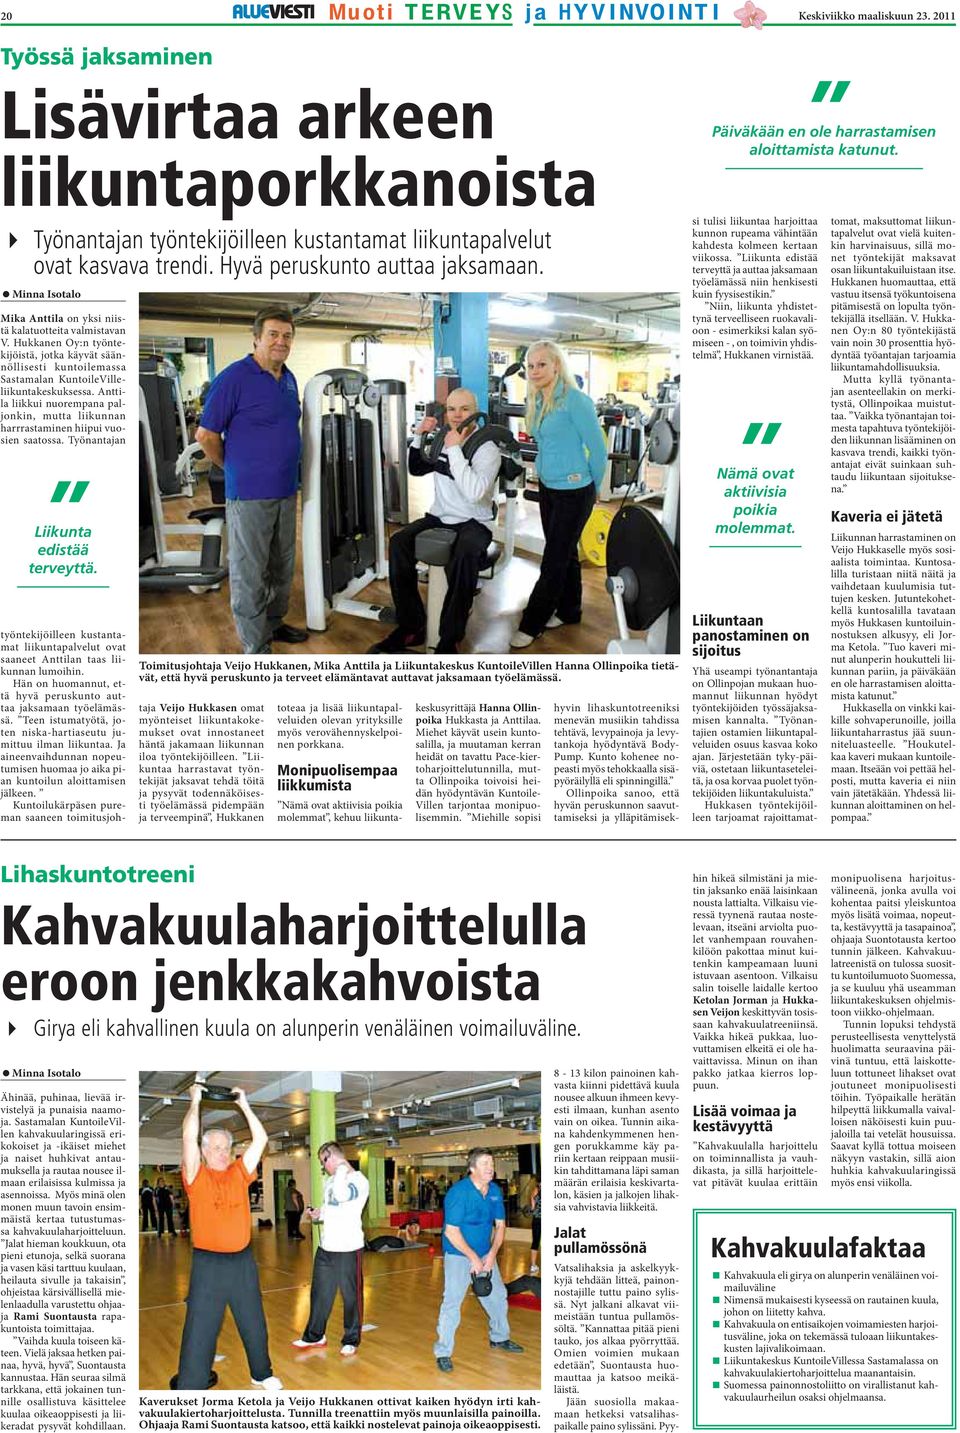 Hukkanen Oy:n työntekijöistä, jotka käyvät säännöllisesti kuntoilemassa Sastamalan KuntoileVilleliikuntakeskuksessa.